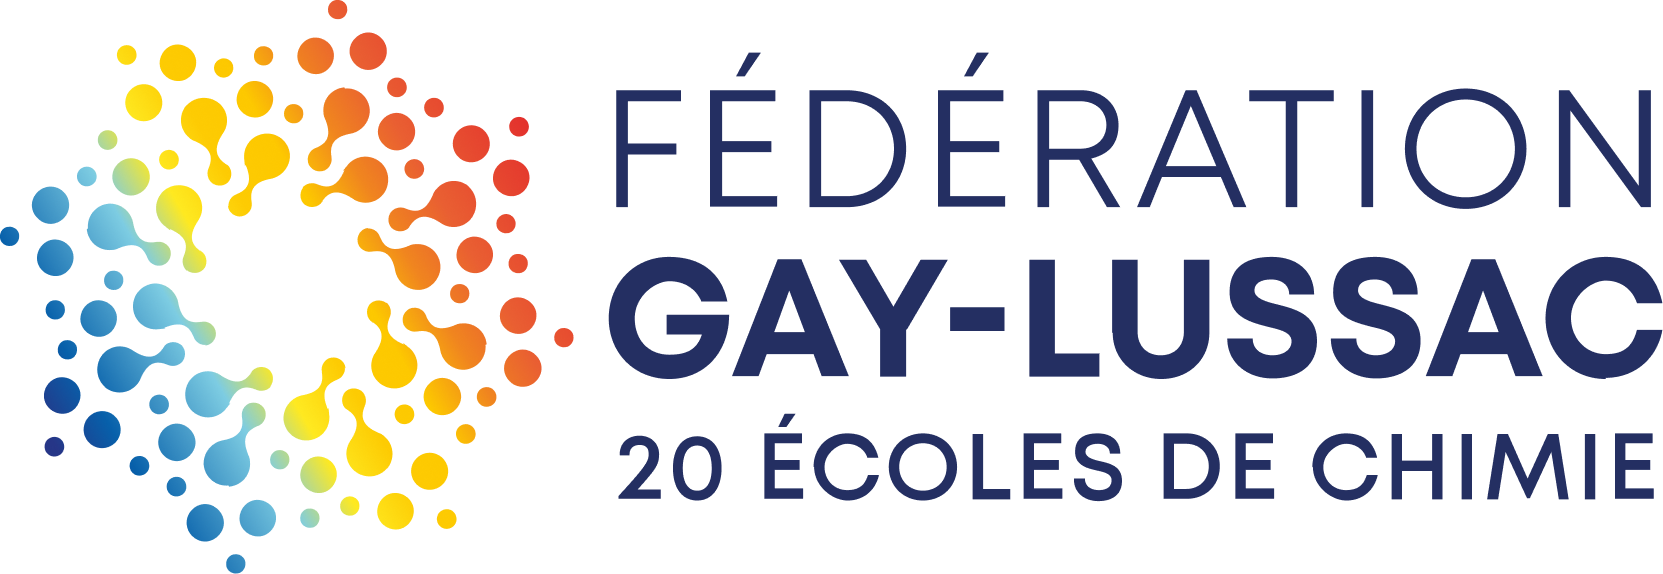 Fédération Gay Lussac(1) 1